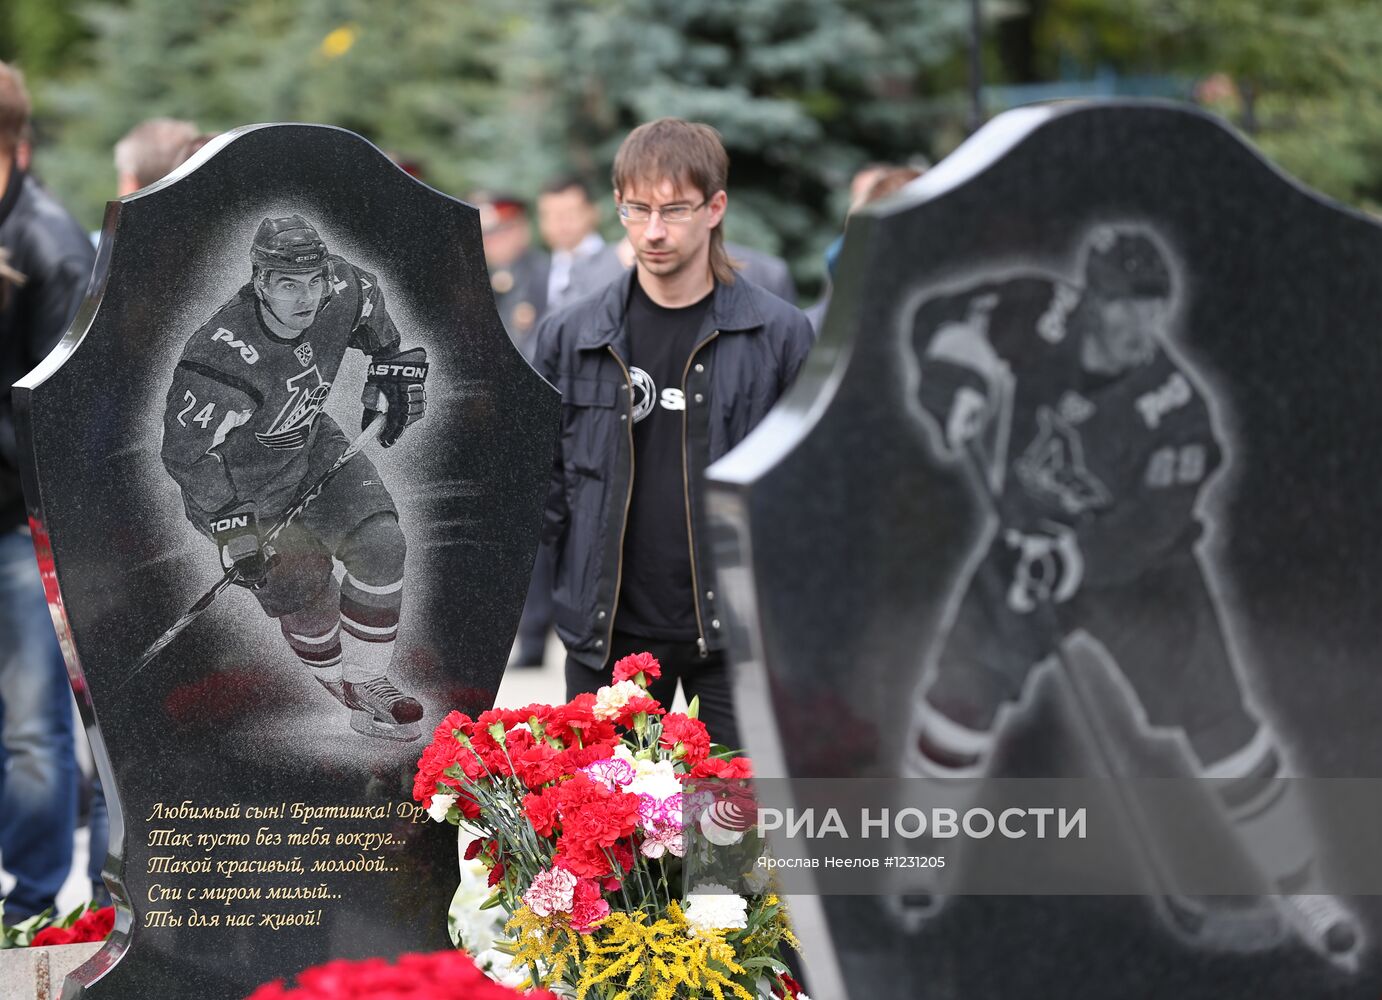 Мероприятия, посвященные годовщине трагедии ХК "Локомотив"